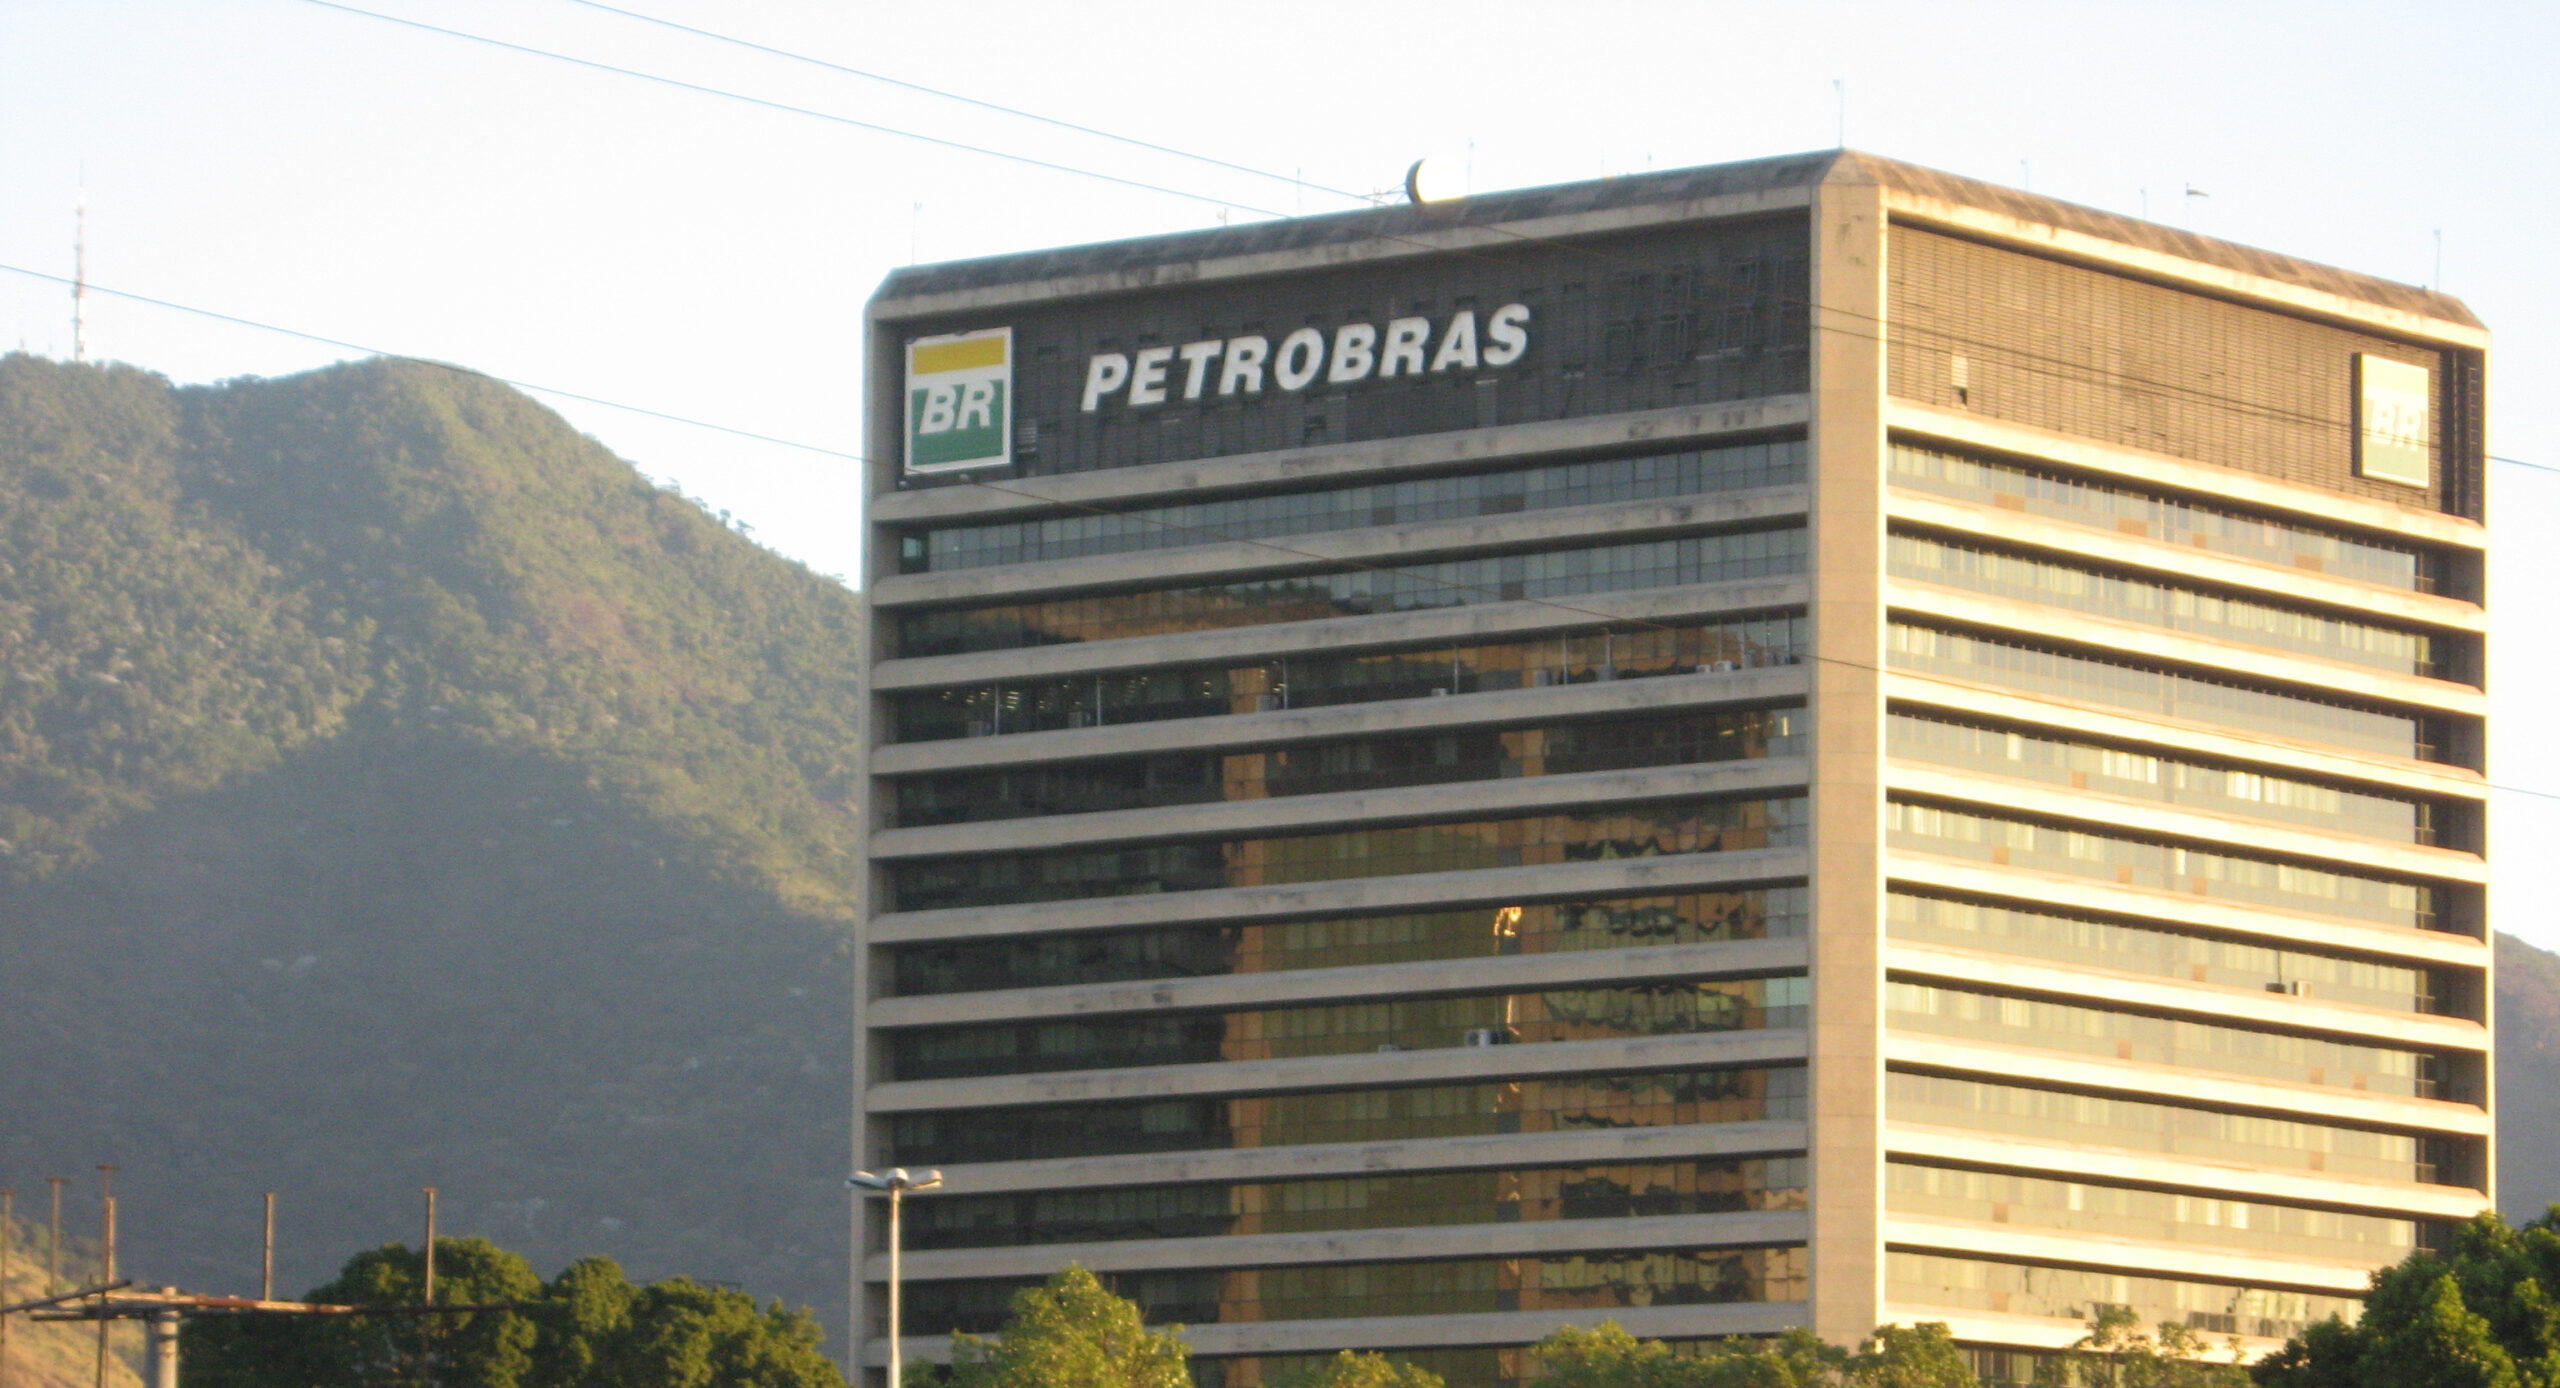 Ministro do STF suspende ações trabalhistas contra a Petrobras (PETR4)